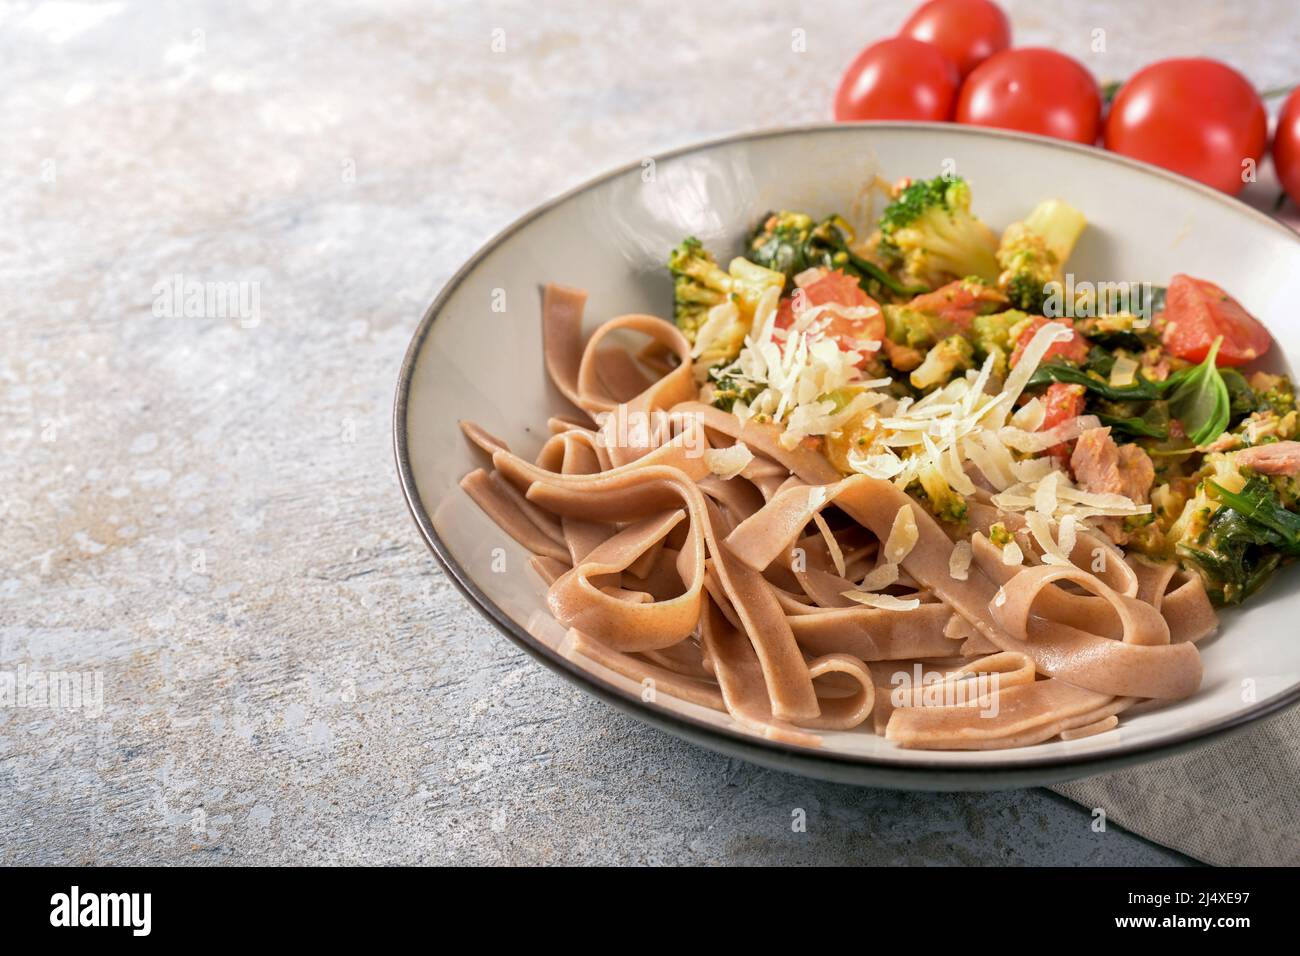 Piatto sano di tagliatelle a grani interi con verdure come broccoli, pomodori e spinaci, servito con parmigiano in un piatto su un rustico grigio Foto Stock